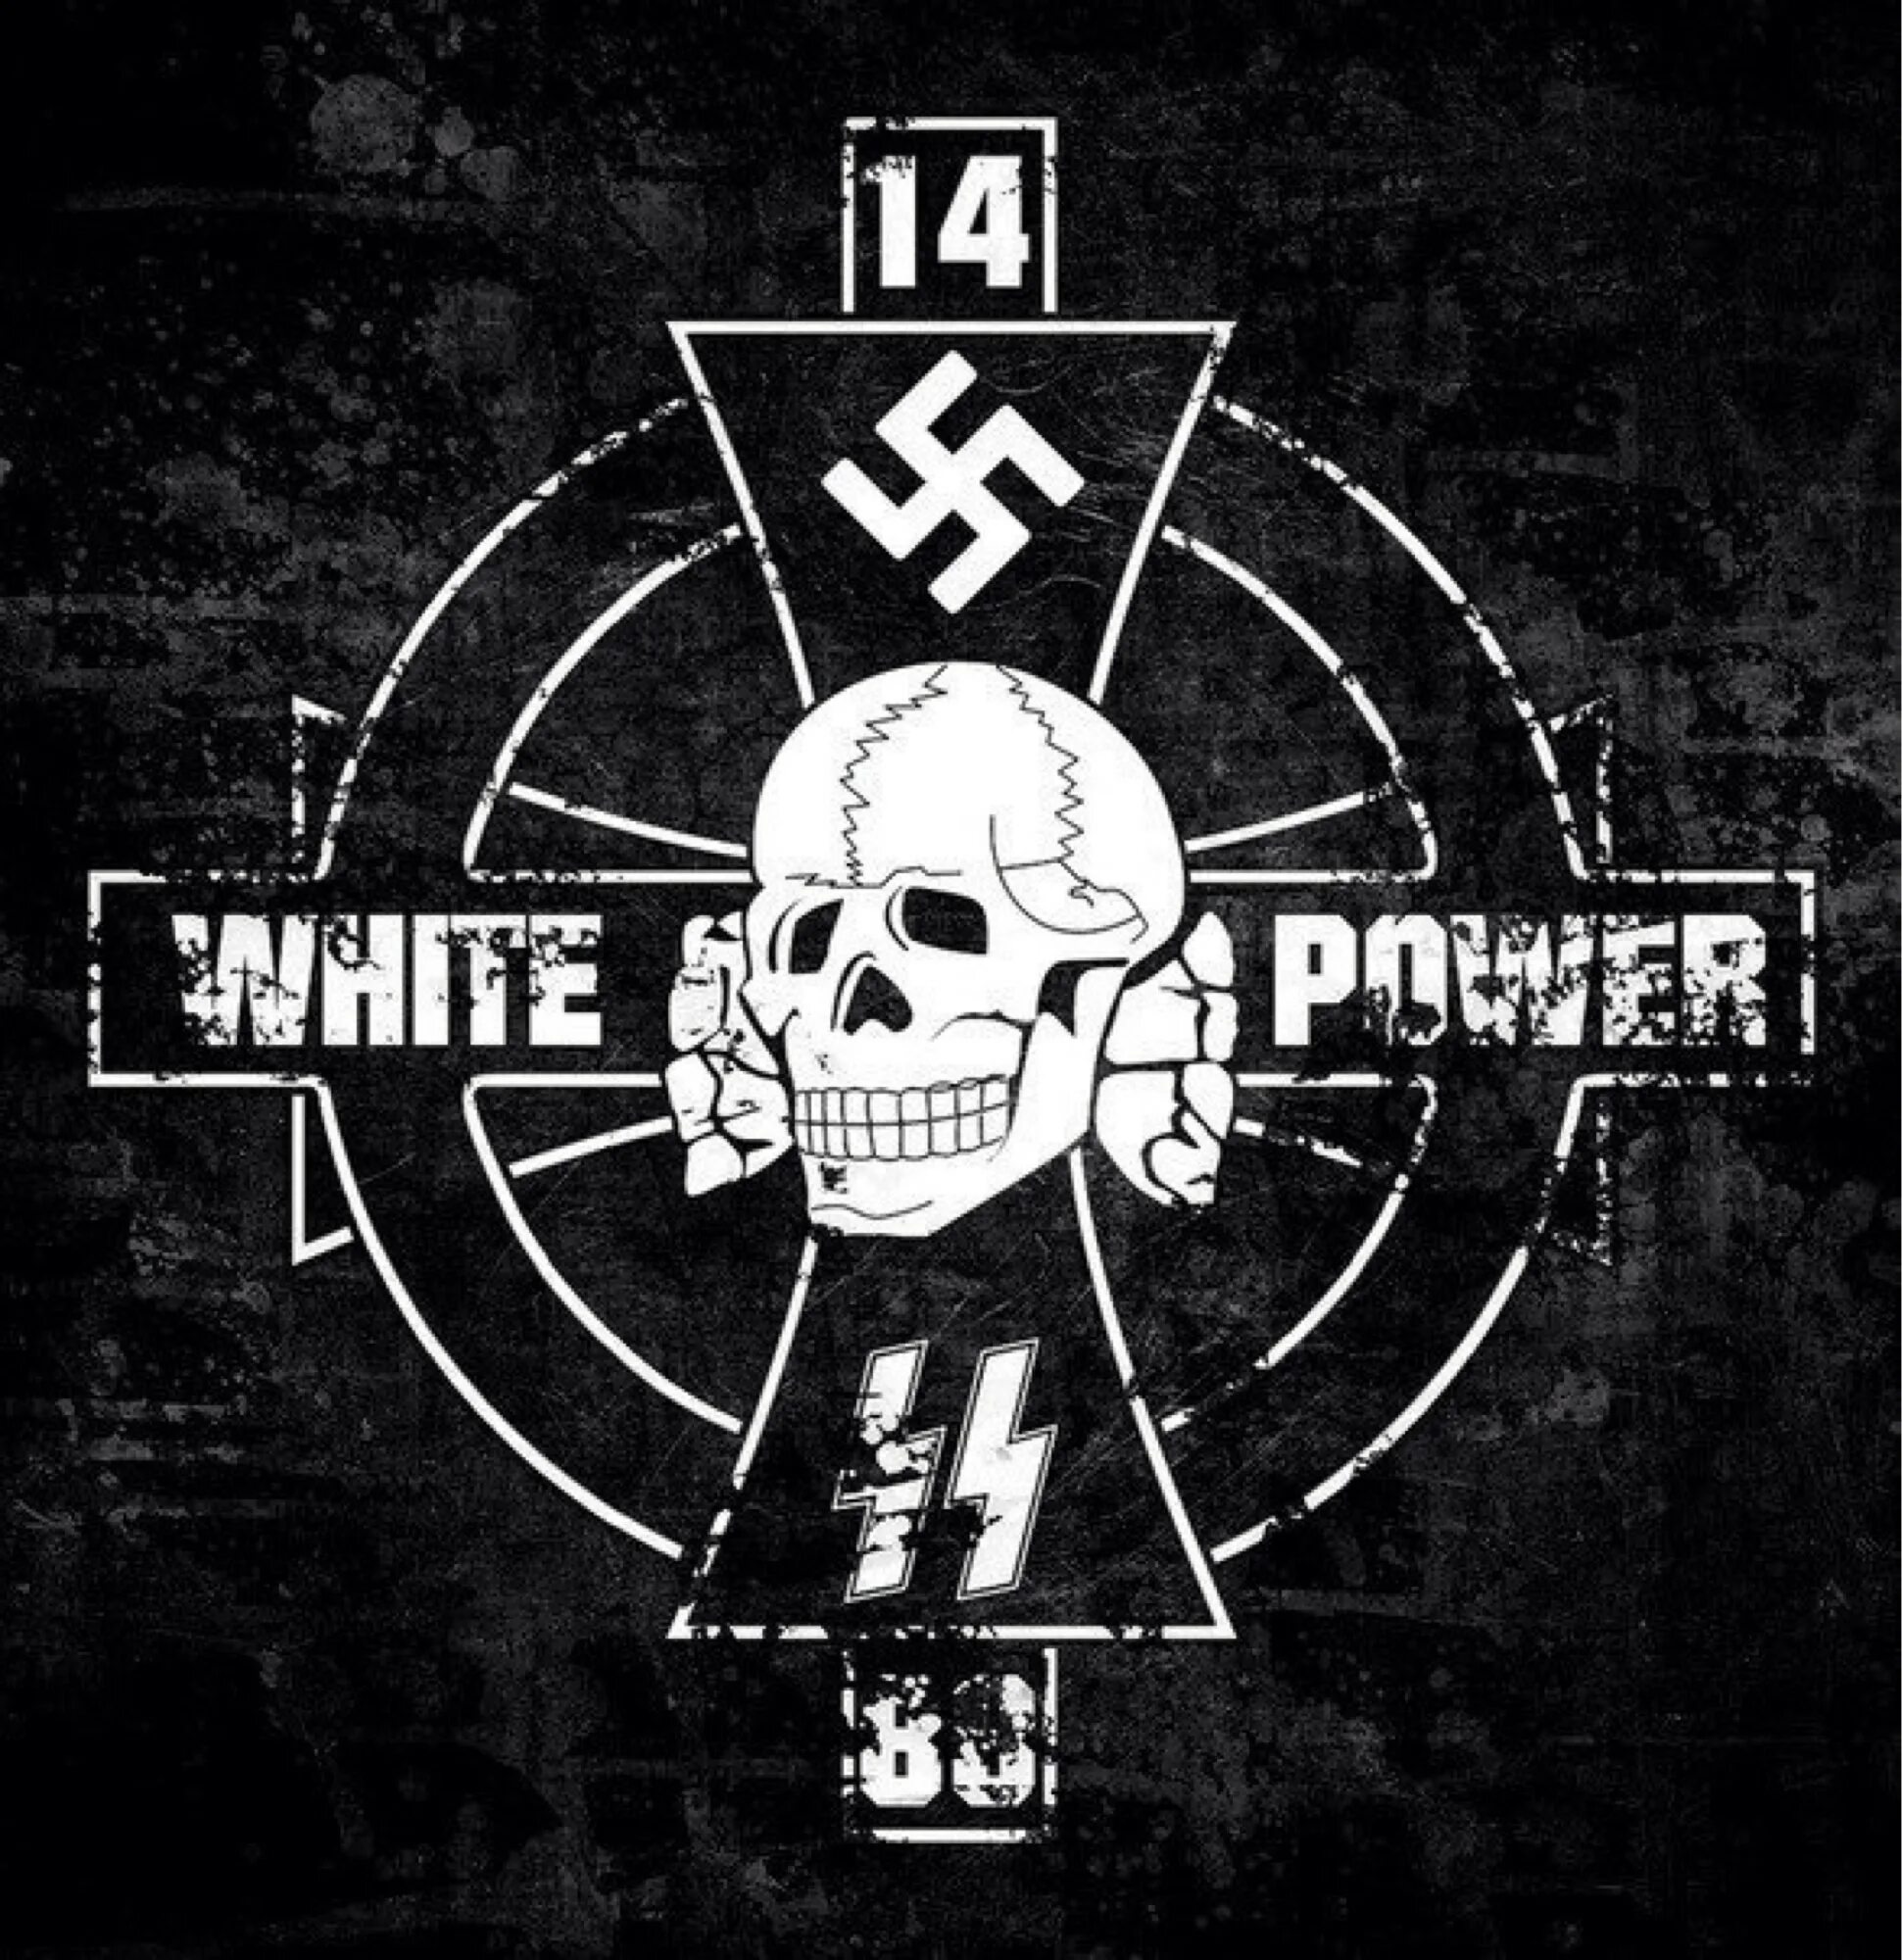 Клоун 1488. White Power скинхед. Символы скинхедов. White Power 1488. Наклейки националистов.